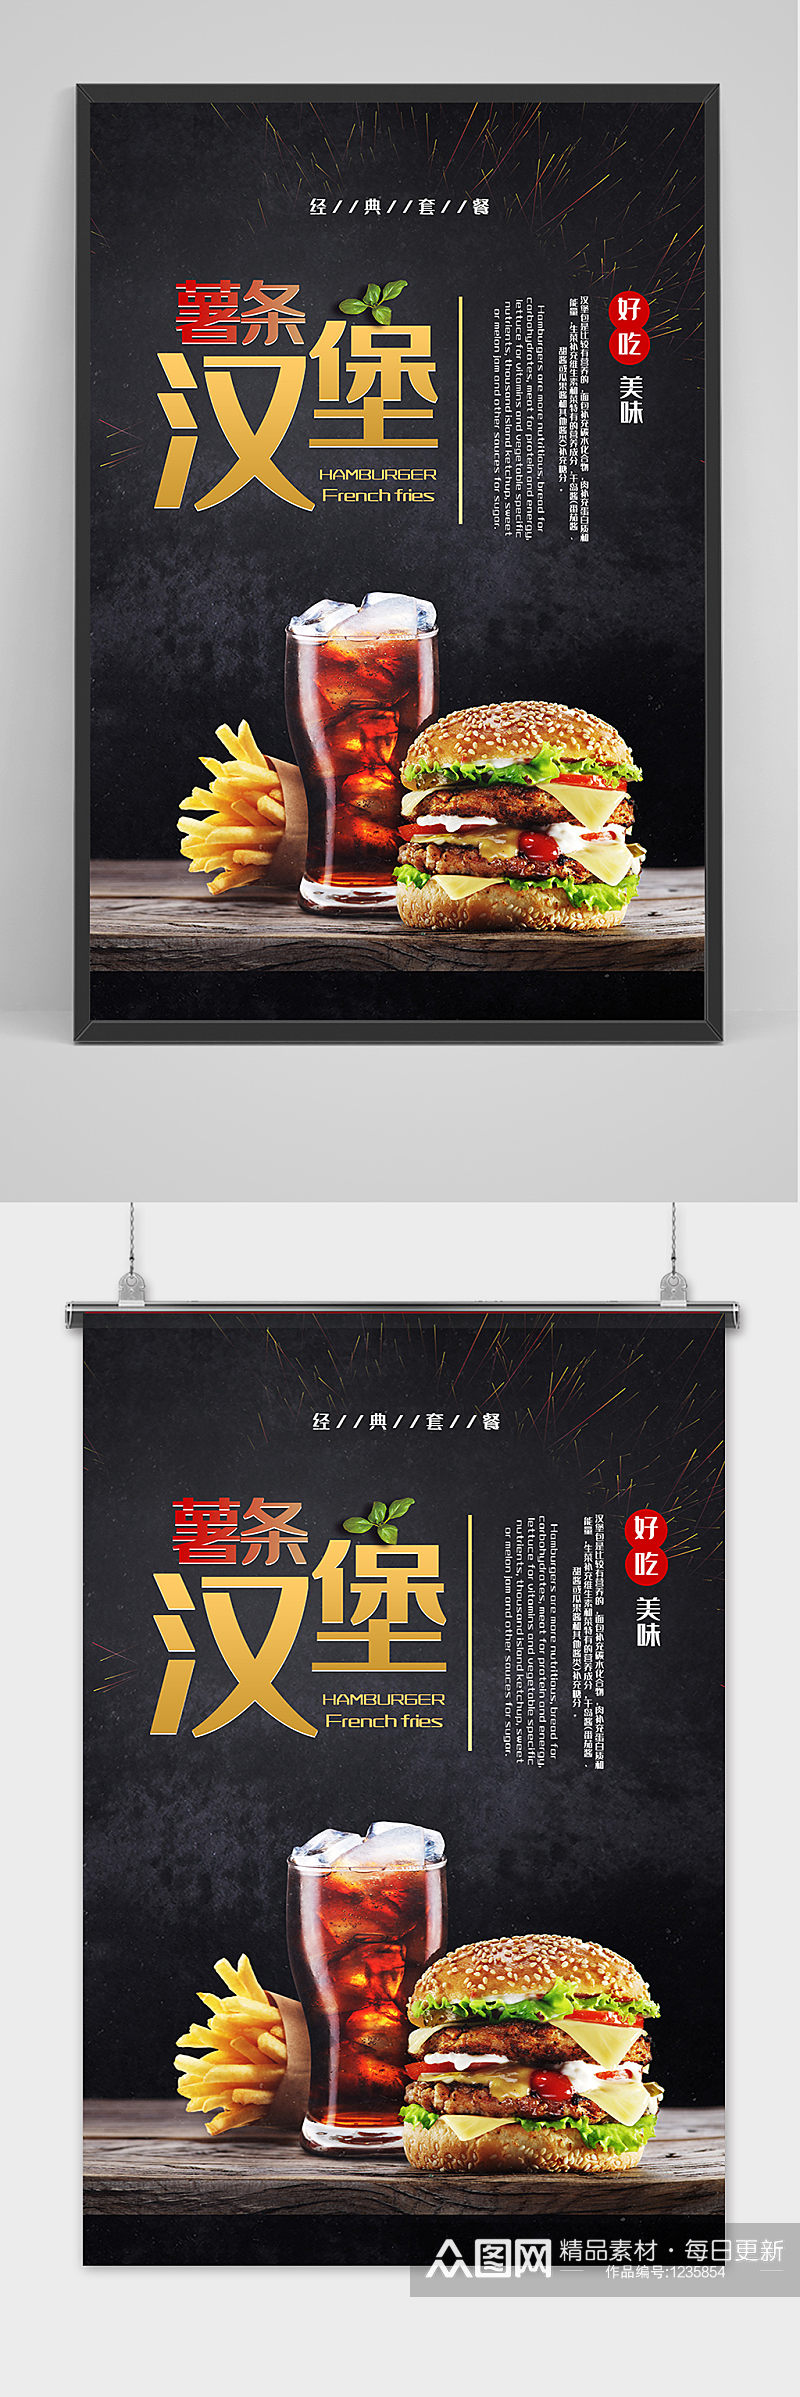 薯条汉堡套餐宣传海报素材